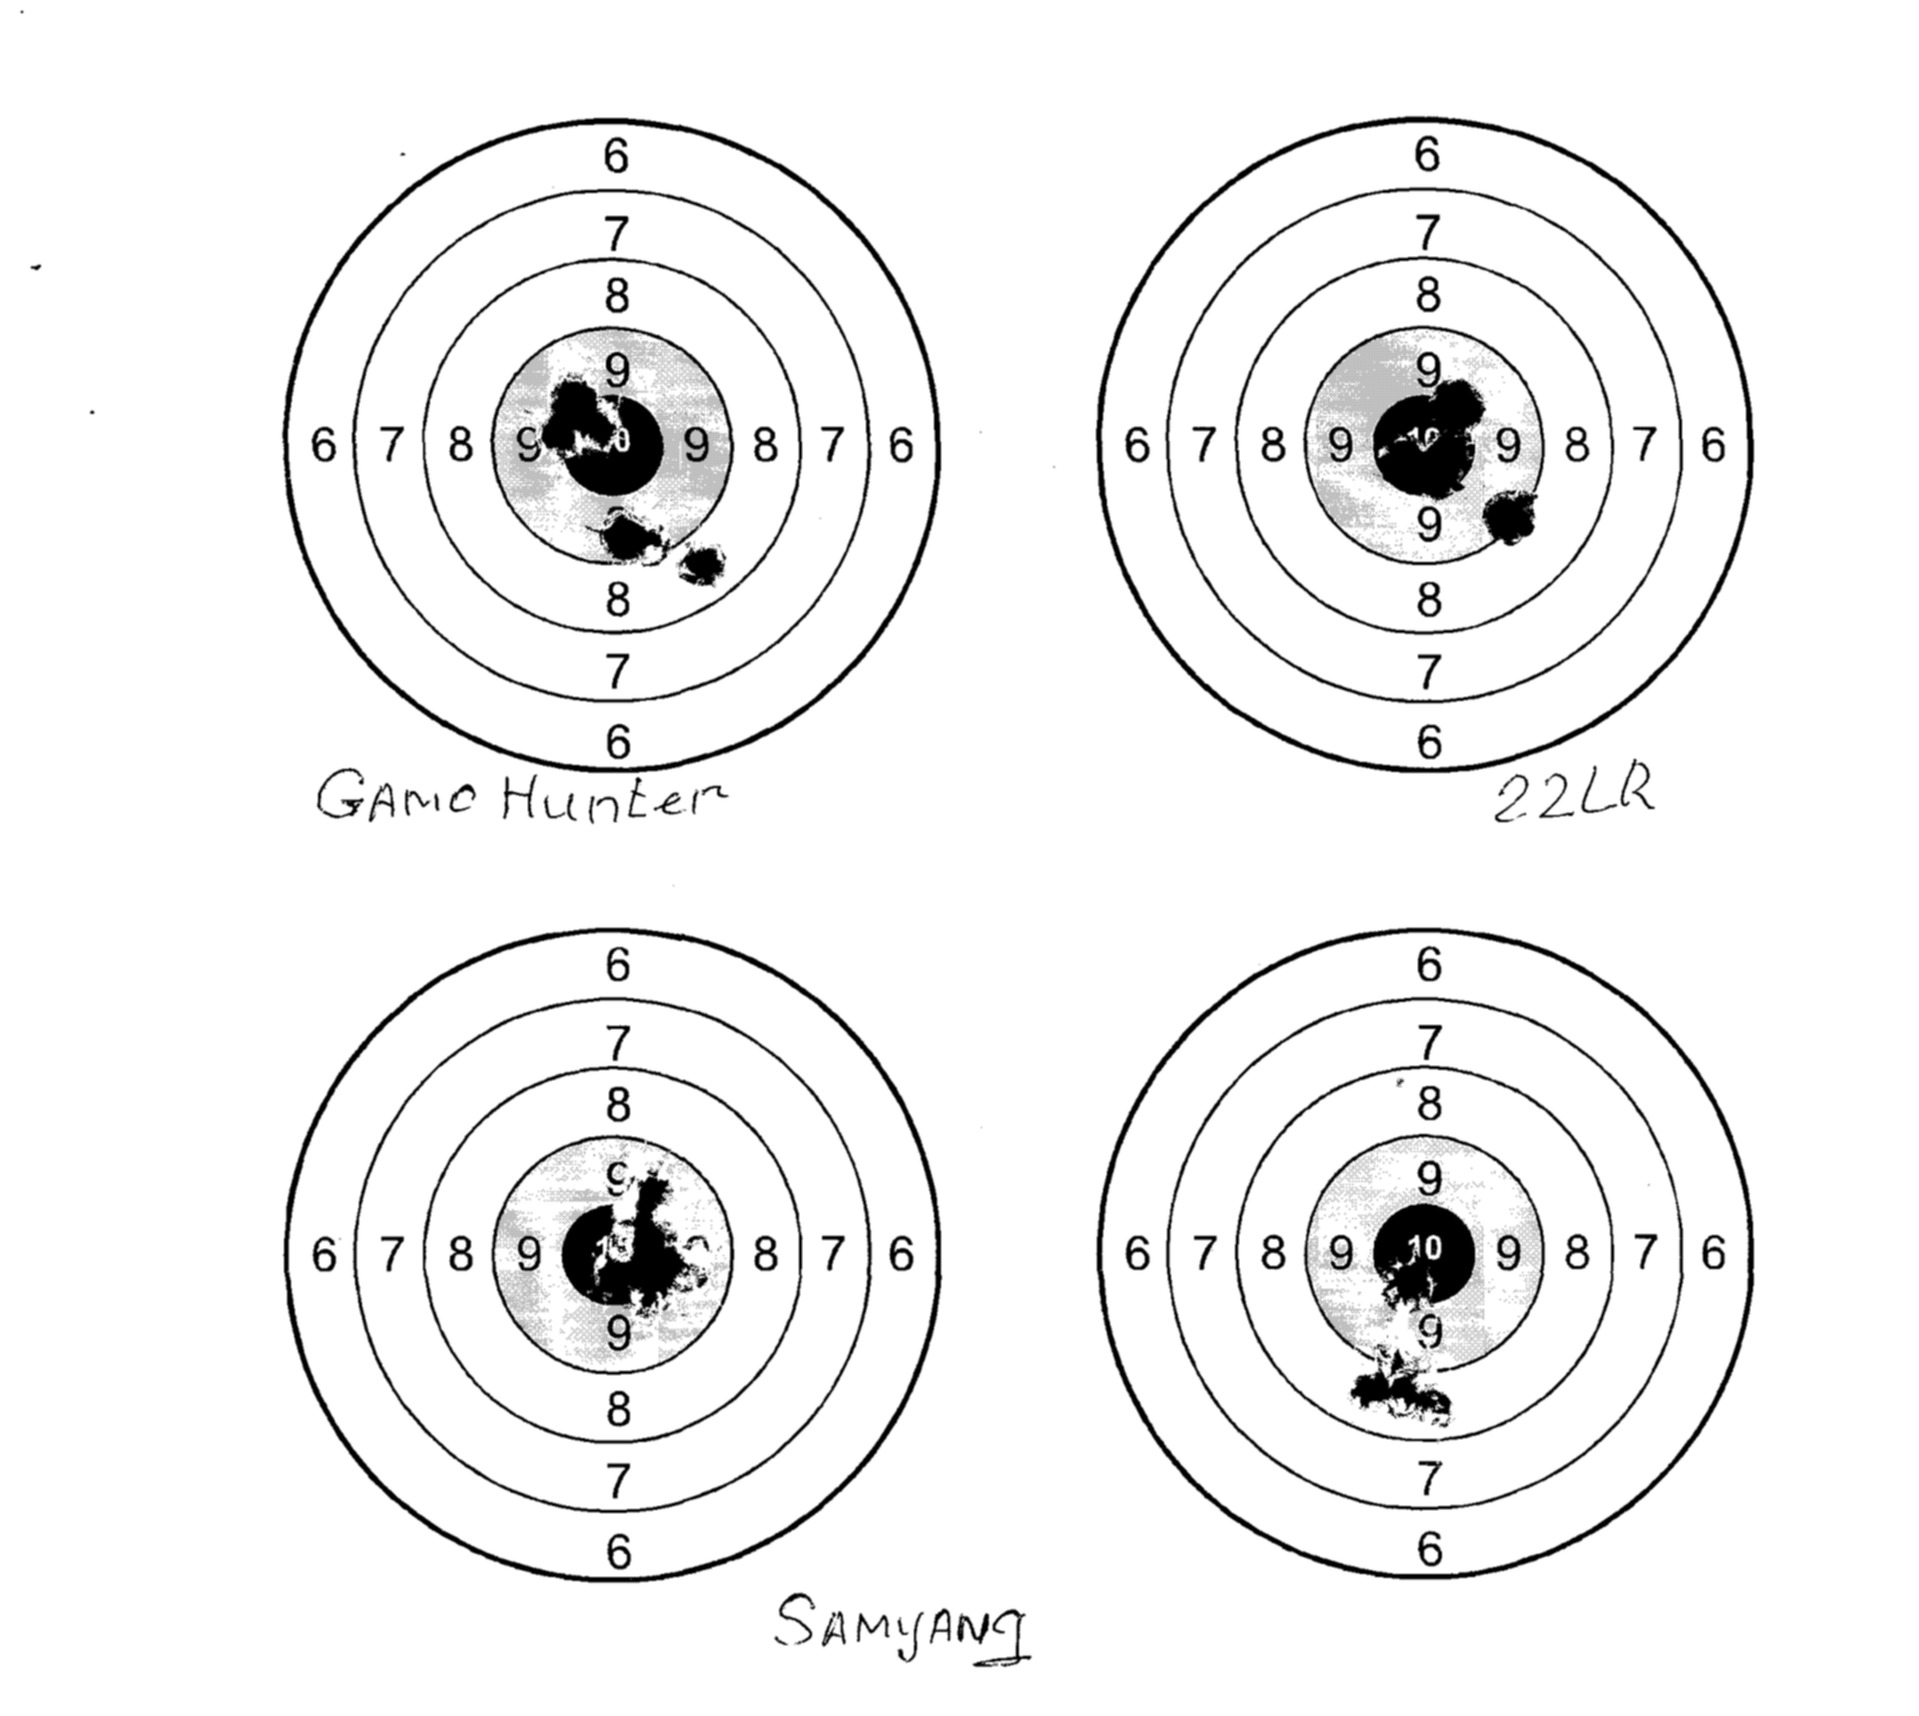 Образец мишени для стрельбы на формате а 4